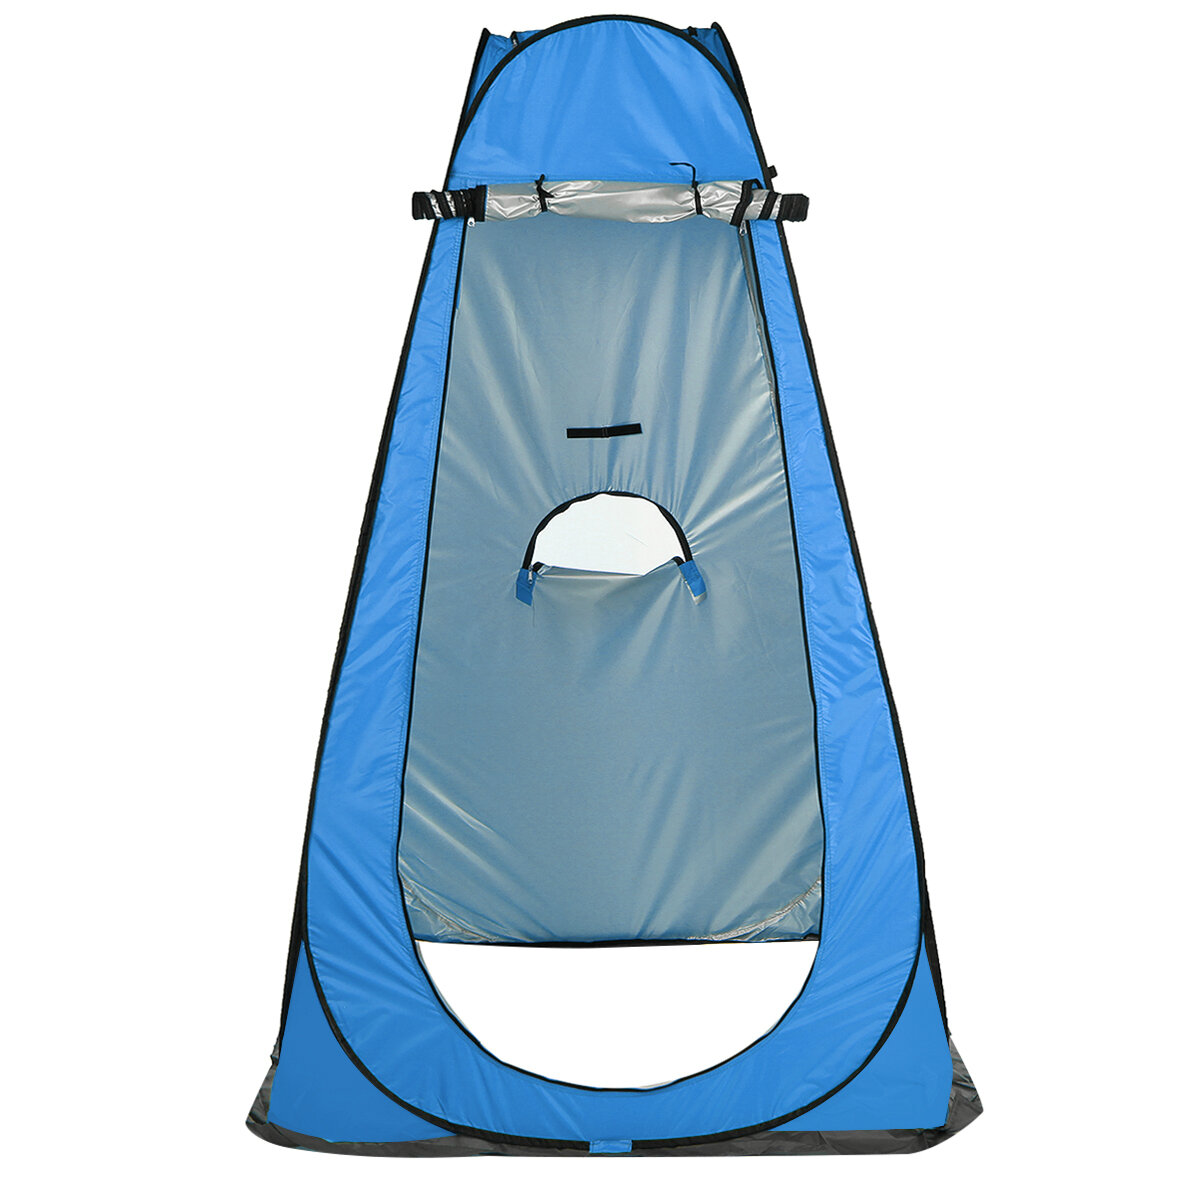 Tente de camping pour douche et toilette avec protection UV et imperméable, pliable et portable pour plus d'intimité.